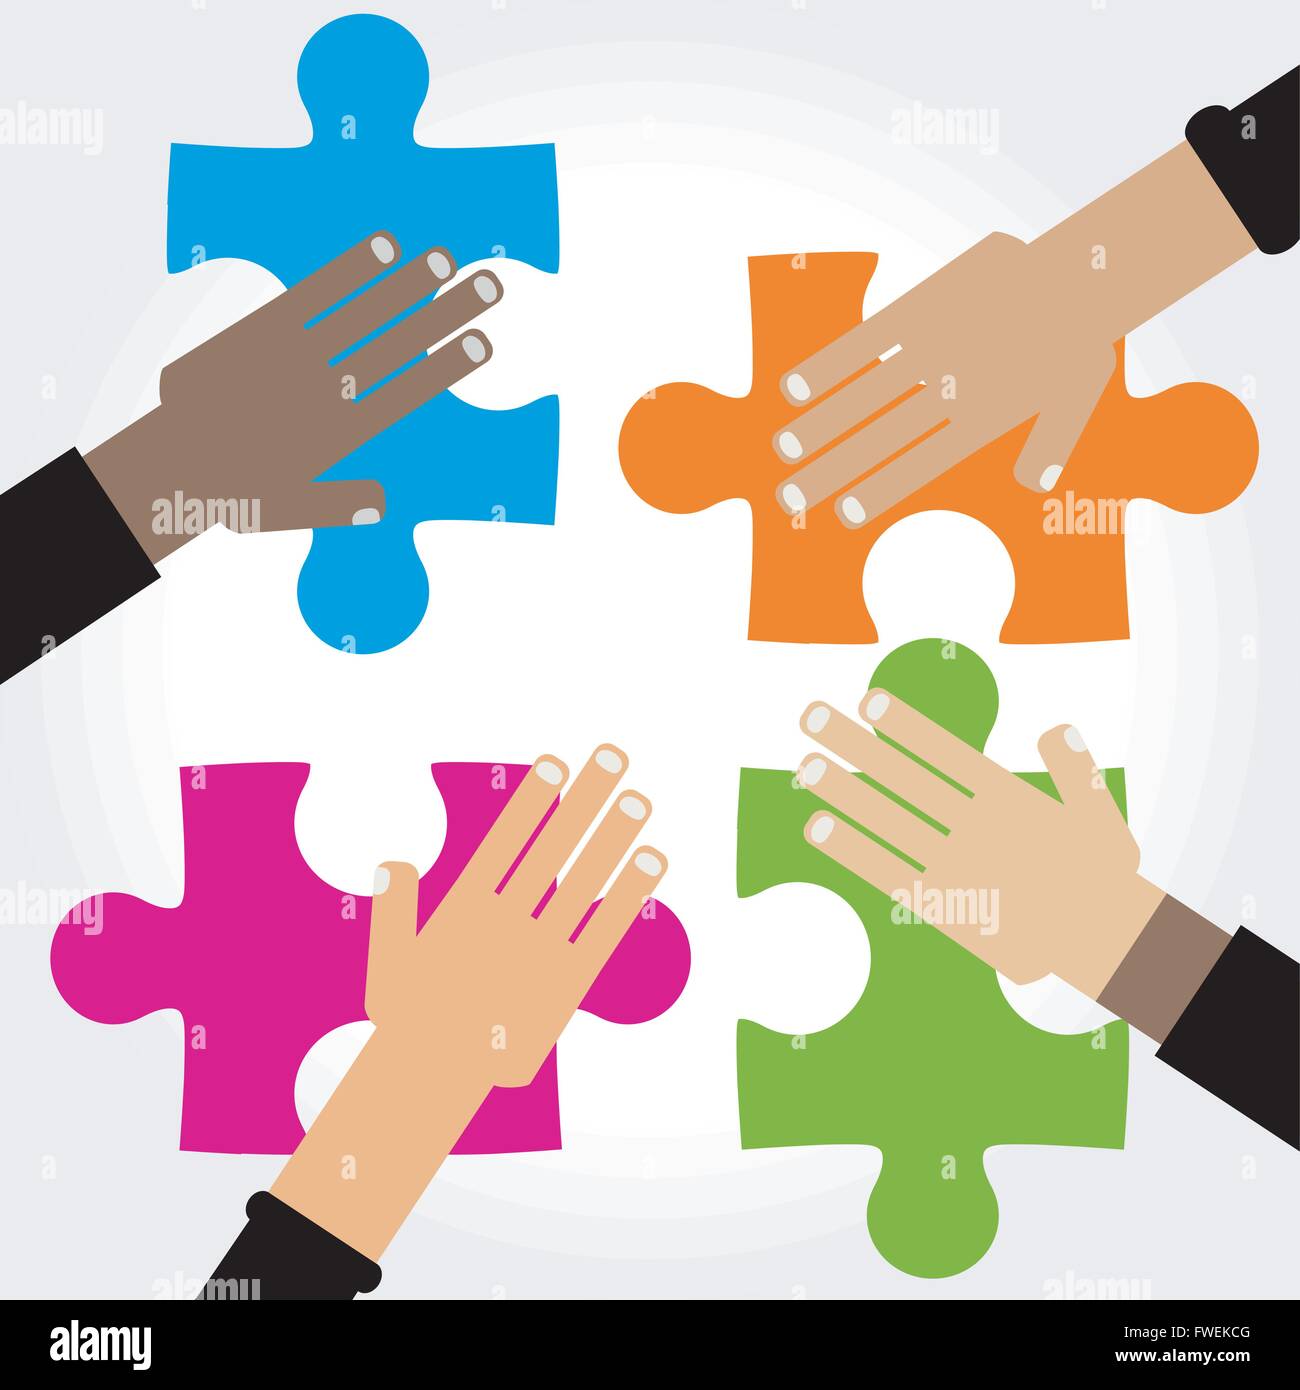 Vielfalt-Hände-Puzzle-Abbildung Stock Vektor